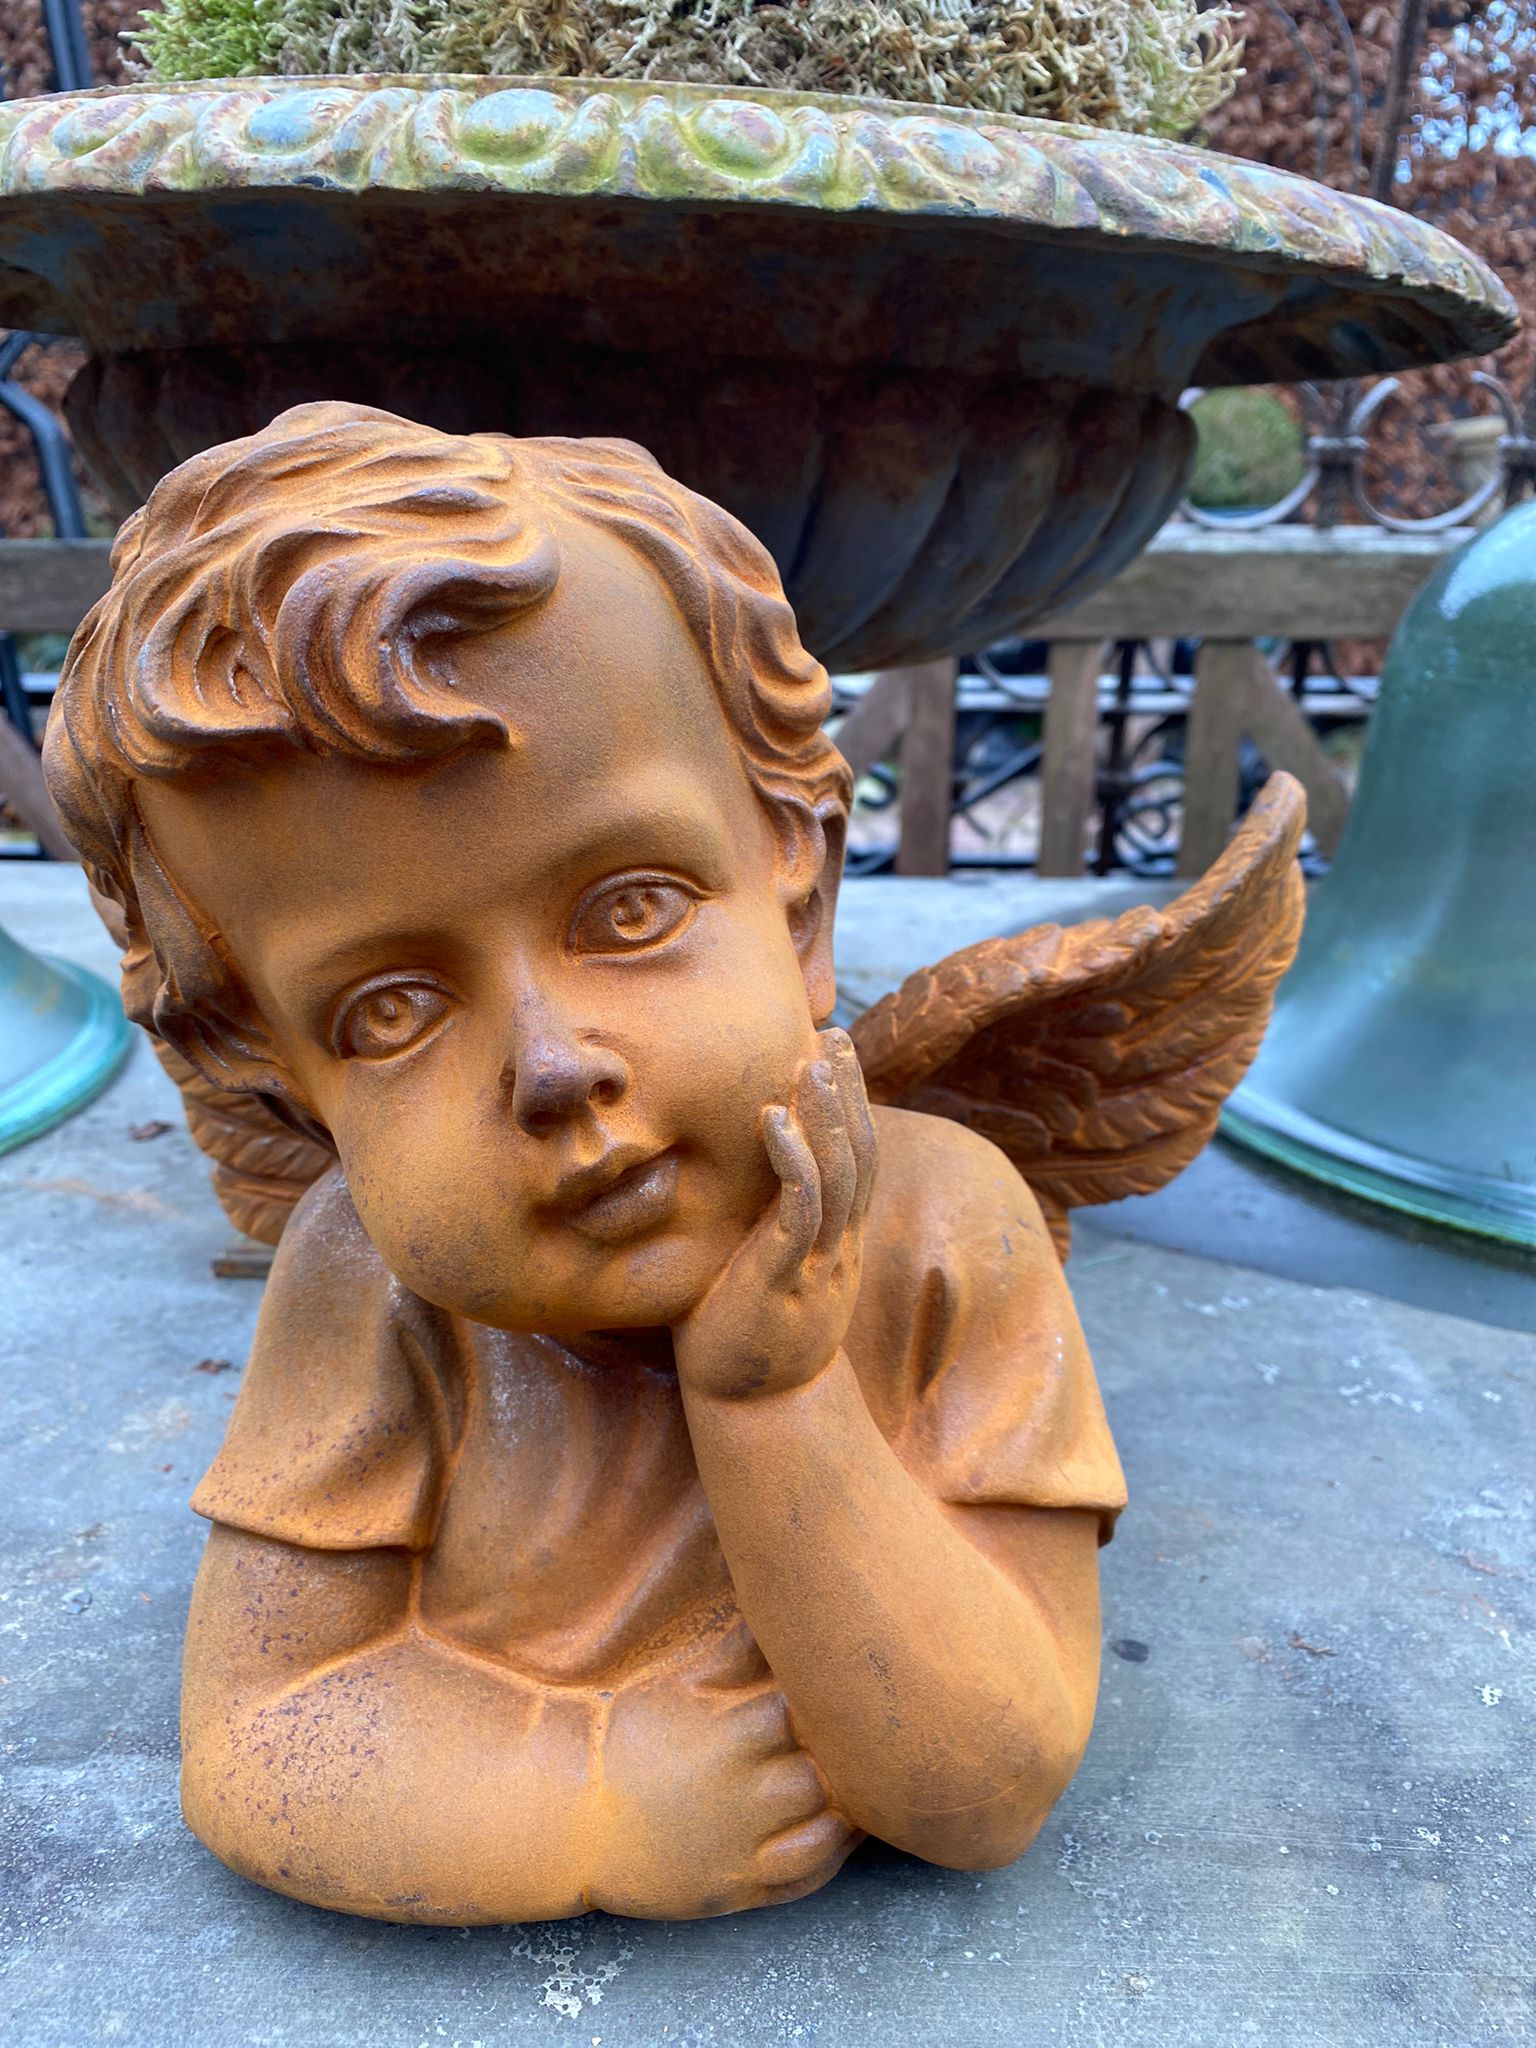 Schitterende engel gemaakt van gietijzer - Brocante bij Ingie